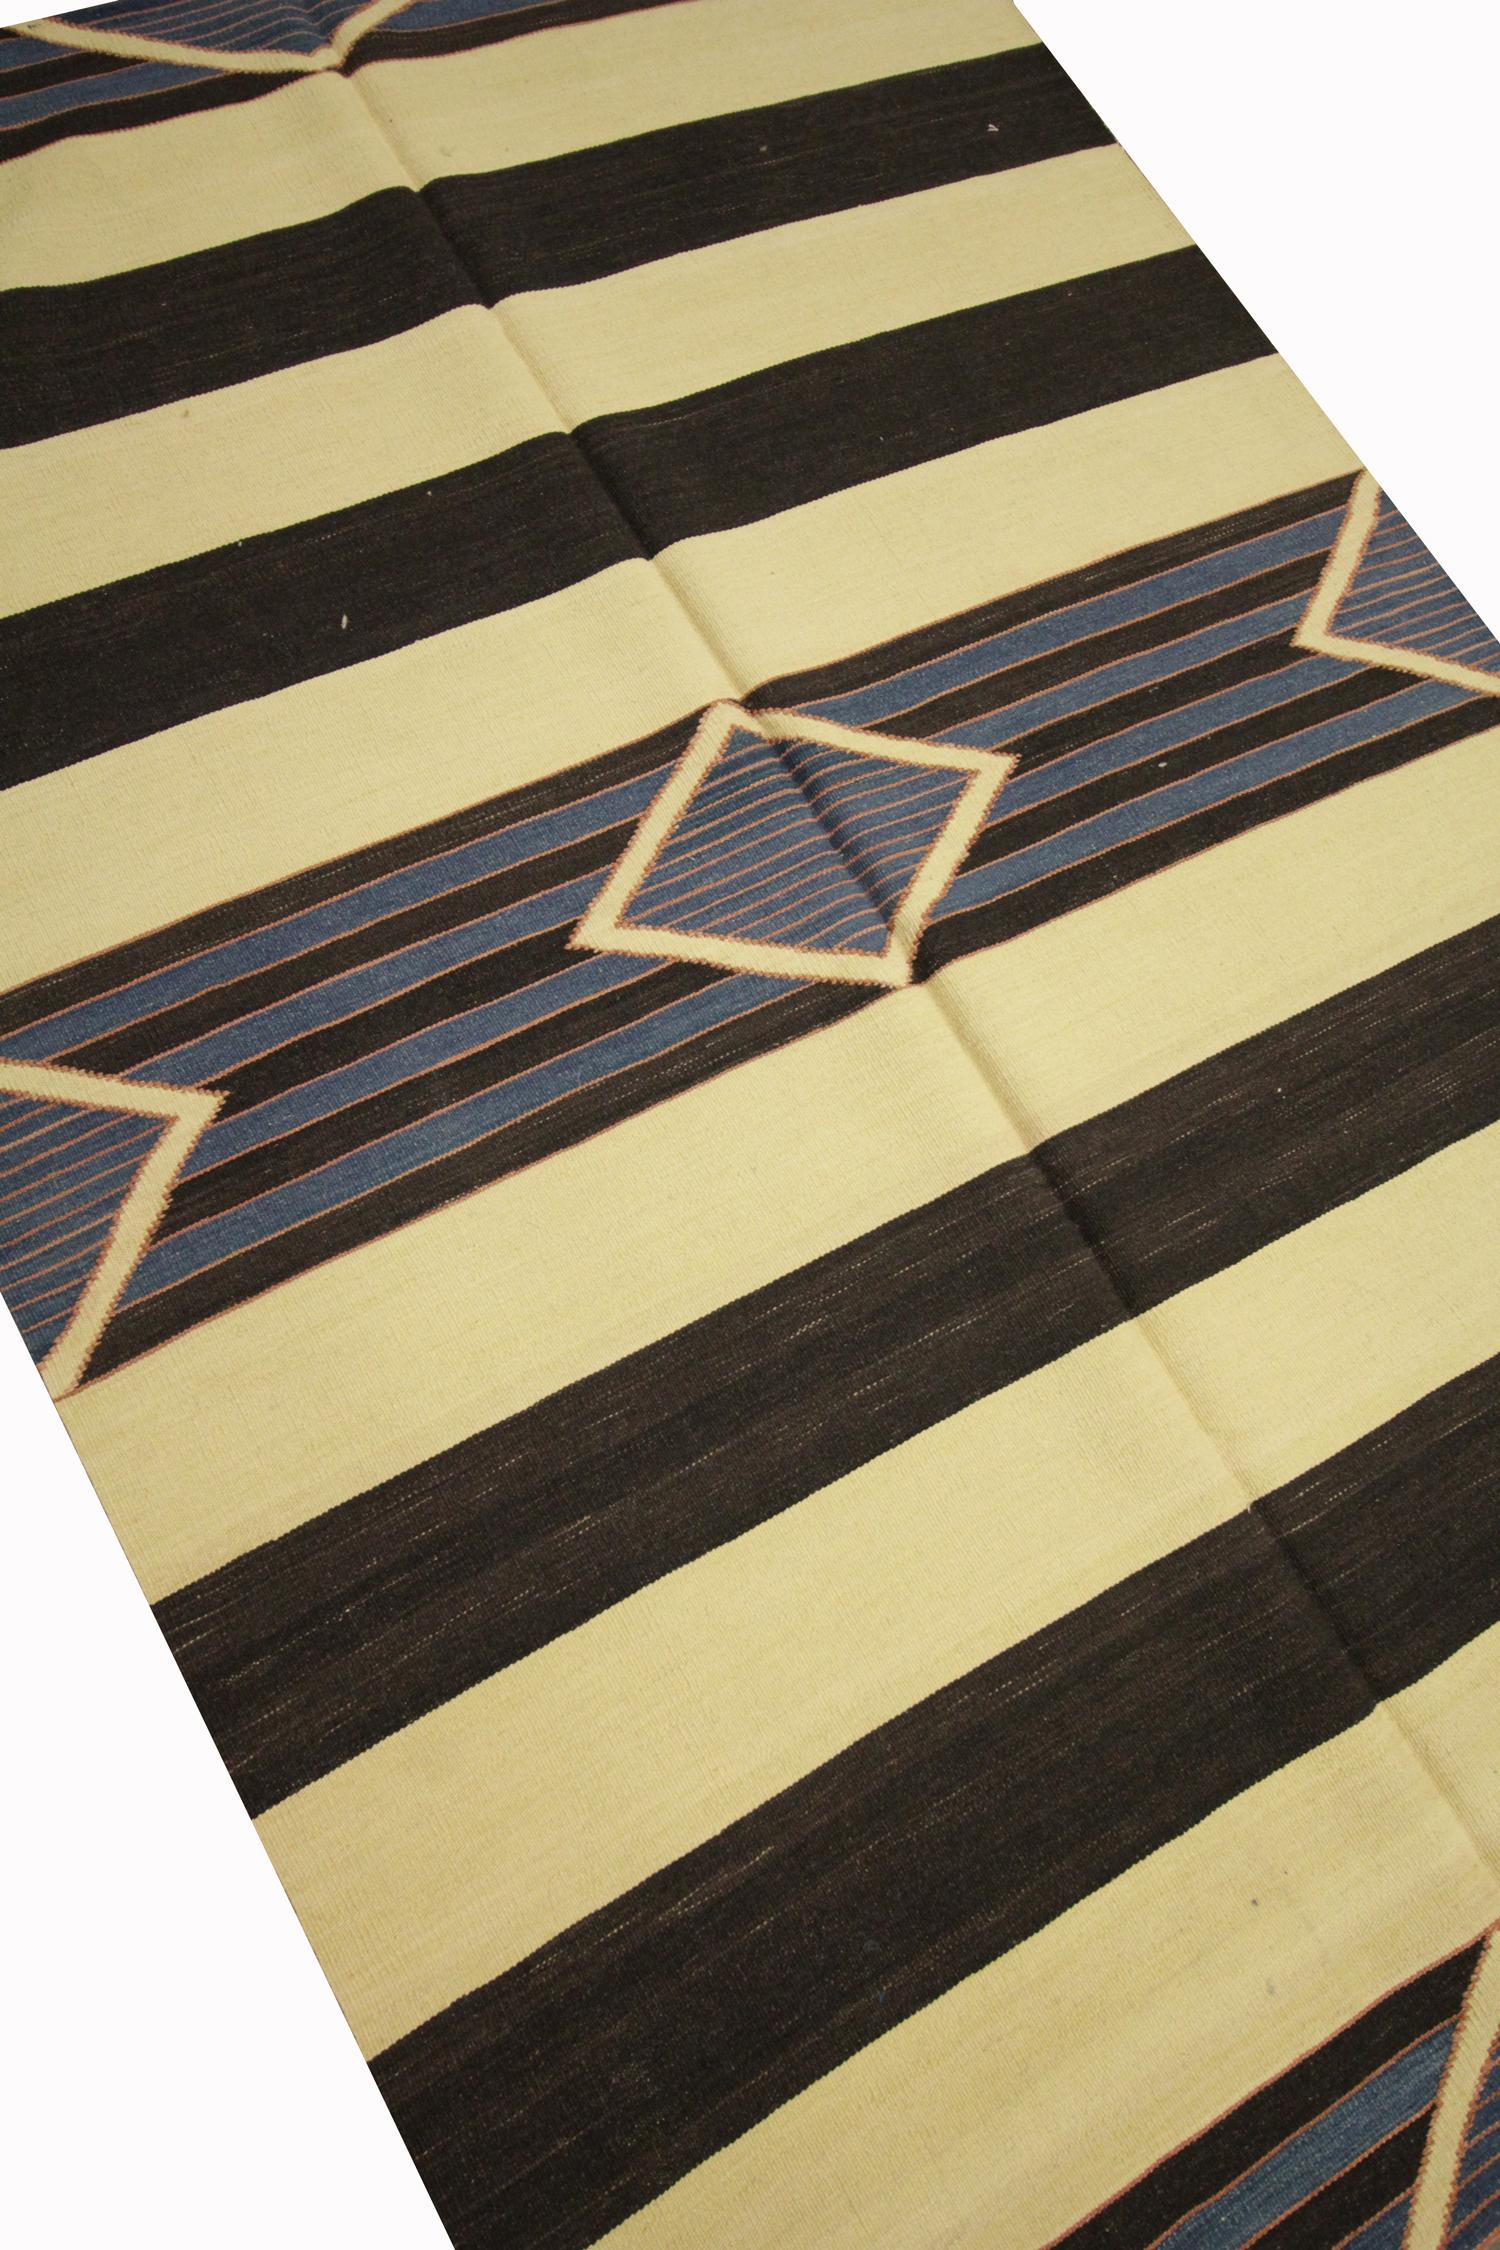 Ce tapis moderne est un Rug & Kilim en laine fine tissé à la main en Inde au début du 21e siècle. Le motif a été tissé dans une palette de couleurs simples (crème, noir et bleu) et présente un motif à rayures avec des losanges et des triangles